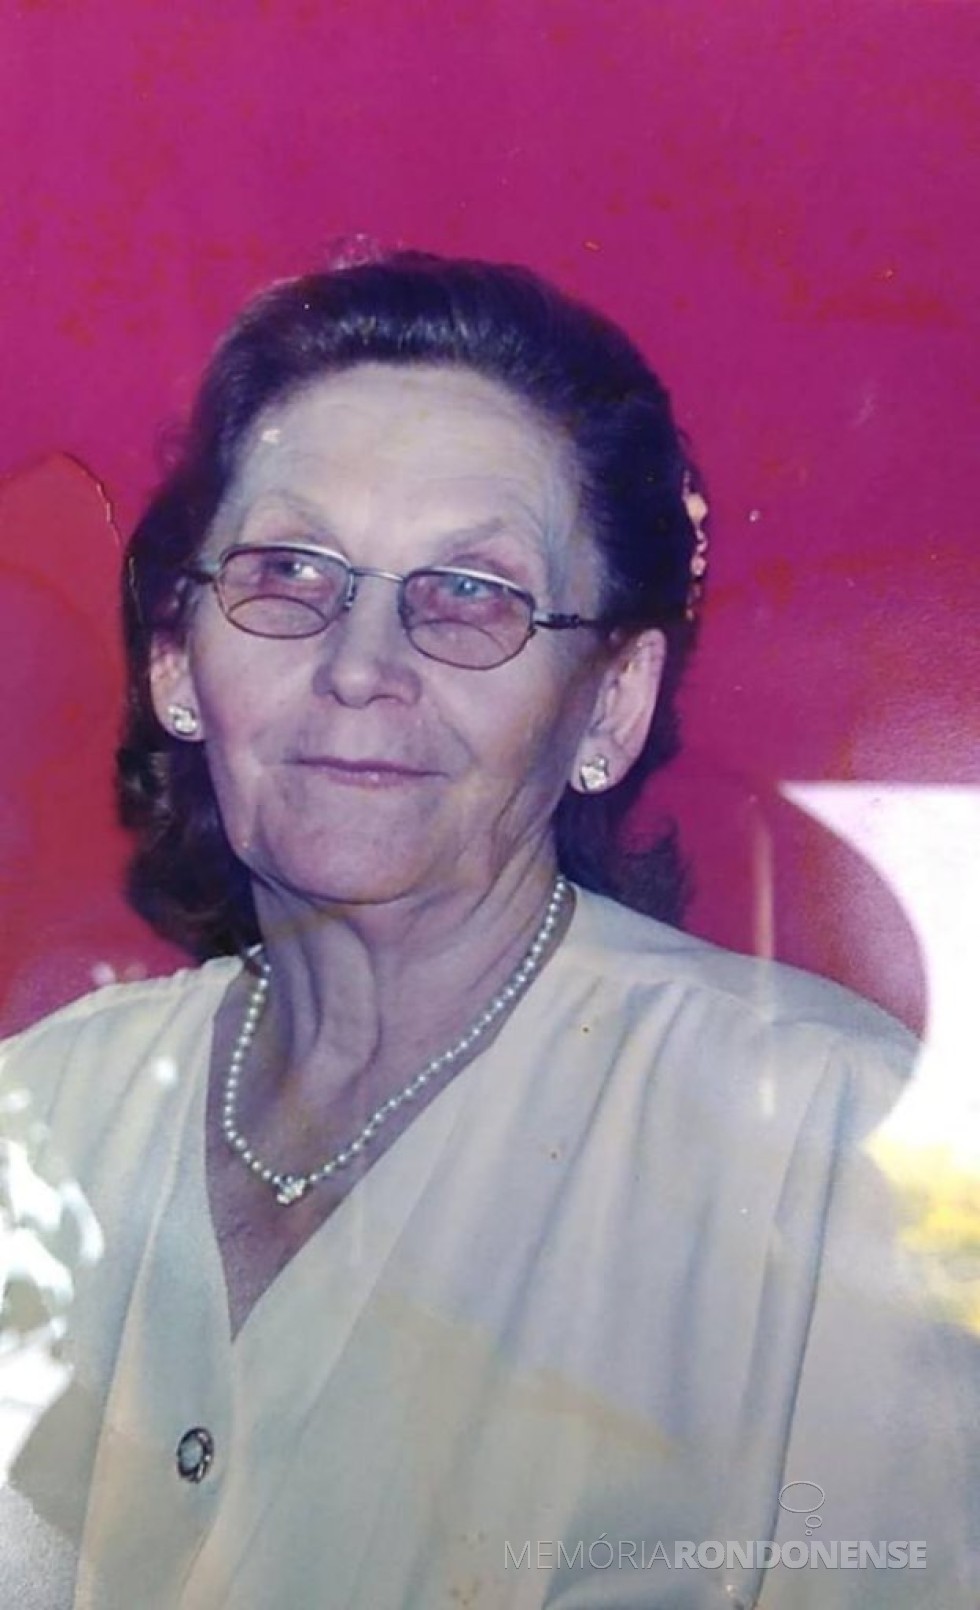 Pioneira rondonense Luzia Besen Schmidt falecida em janeiro de 2019.
Imagem: Acervo Capela São Paulo de Vila Curvado - FOTO 12 - 